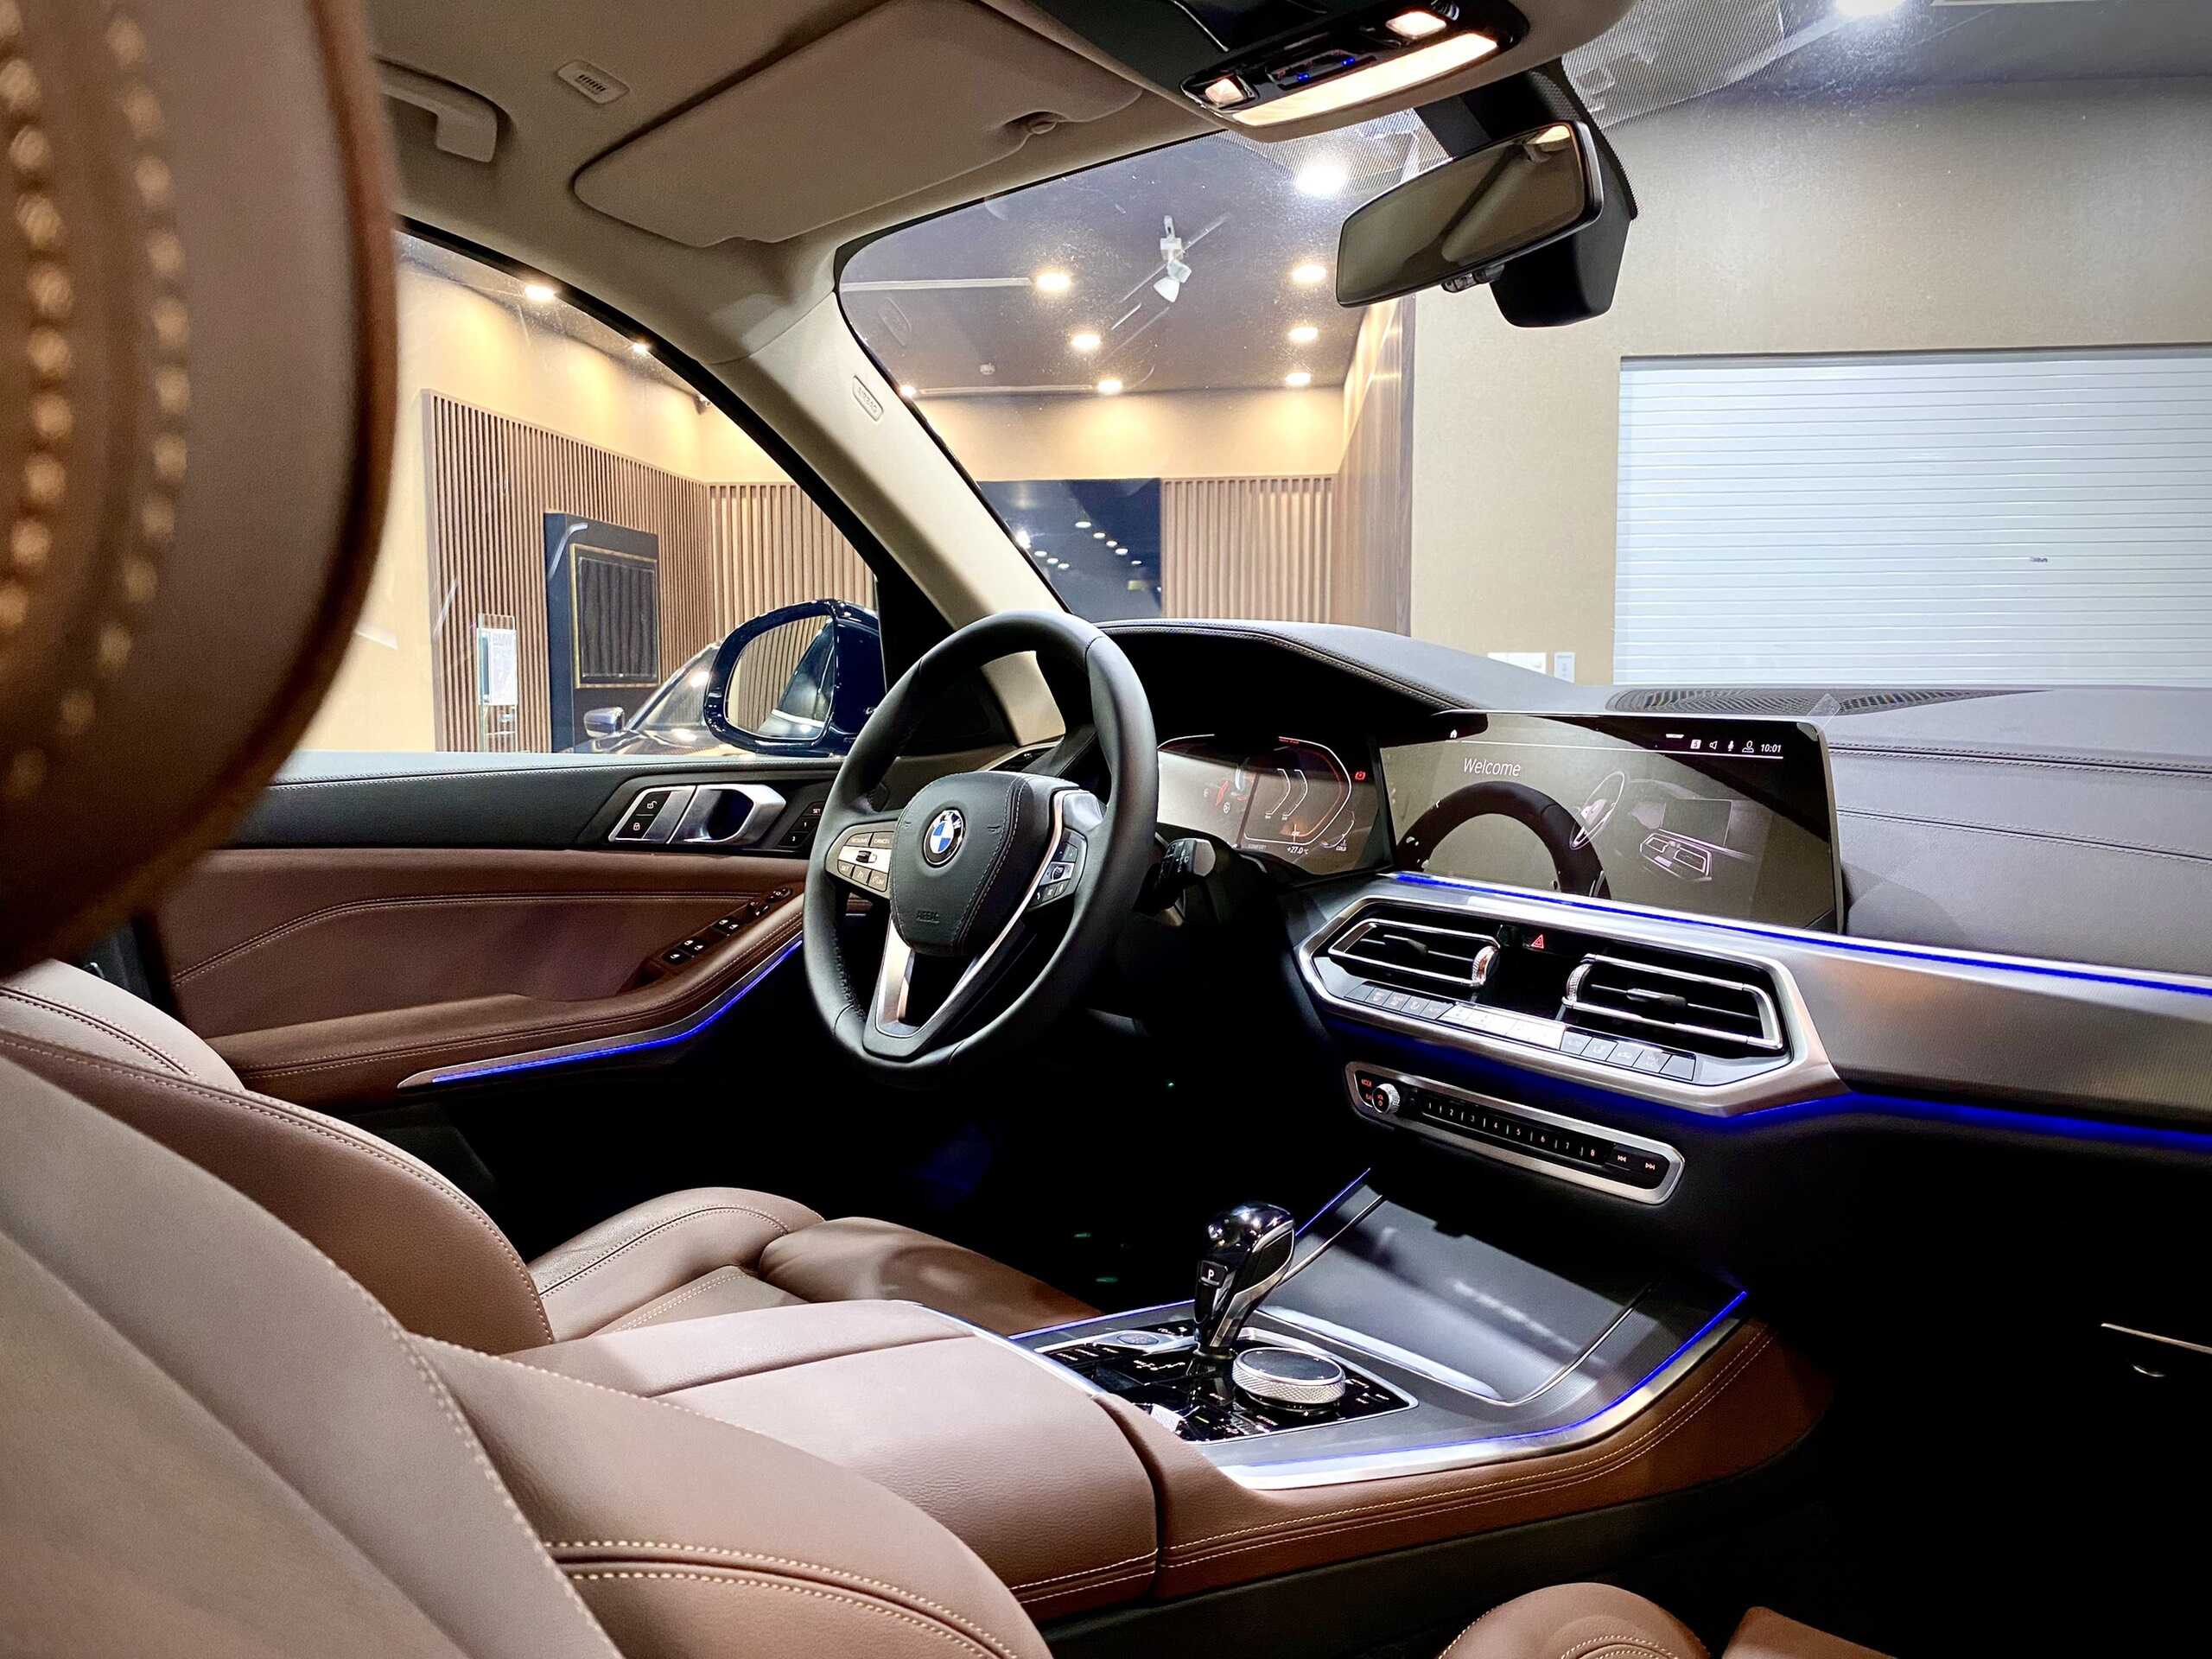 Khoang nội thất hiện đại - sang trọng trên BMW X5 xLine.